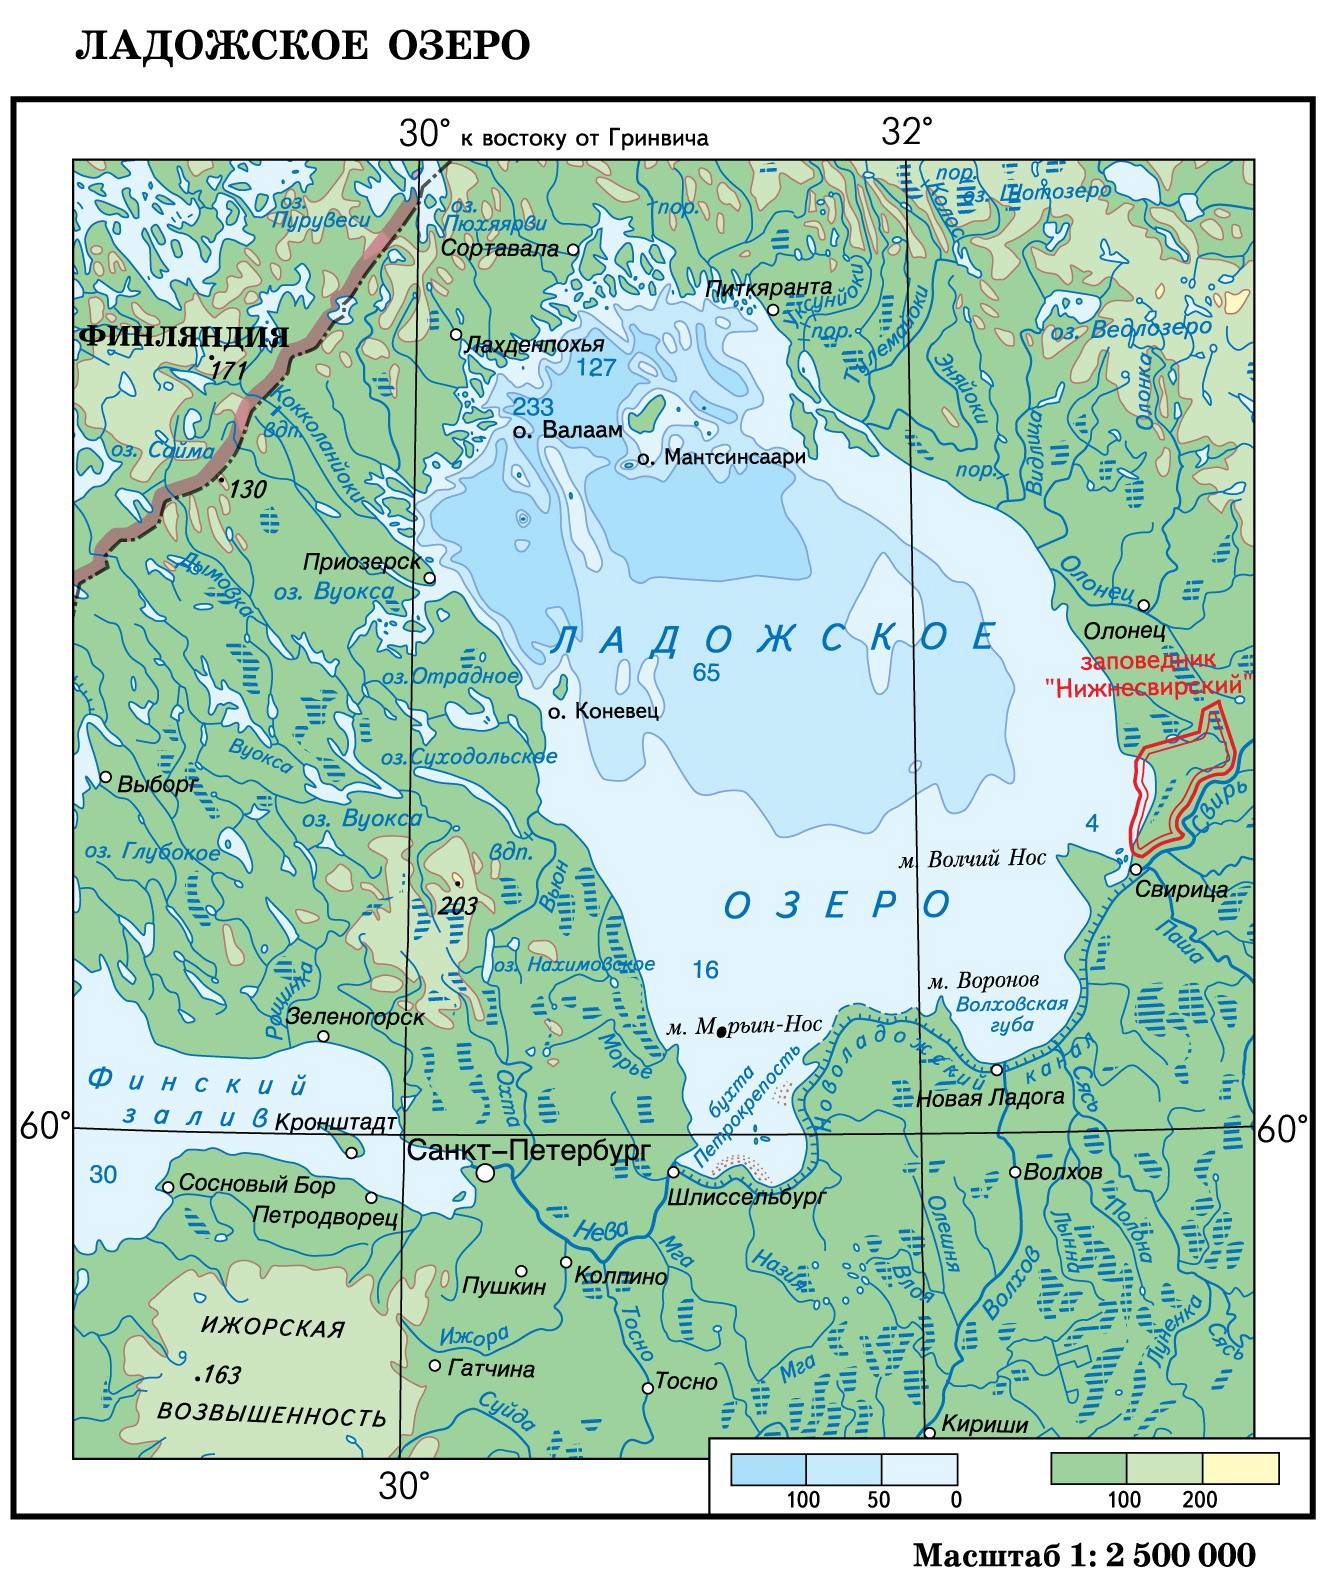 Ладожское озеро: факты